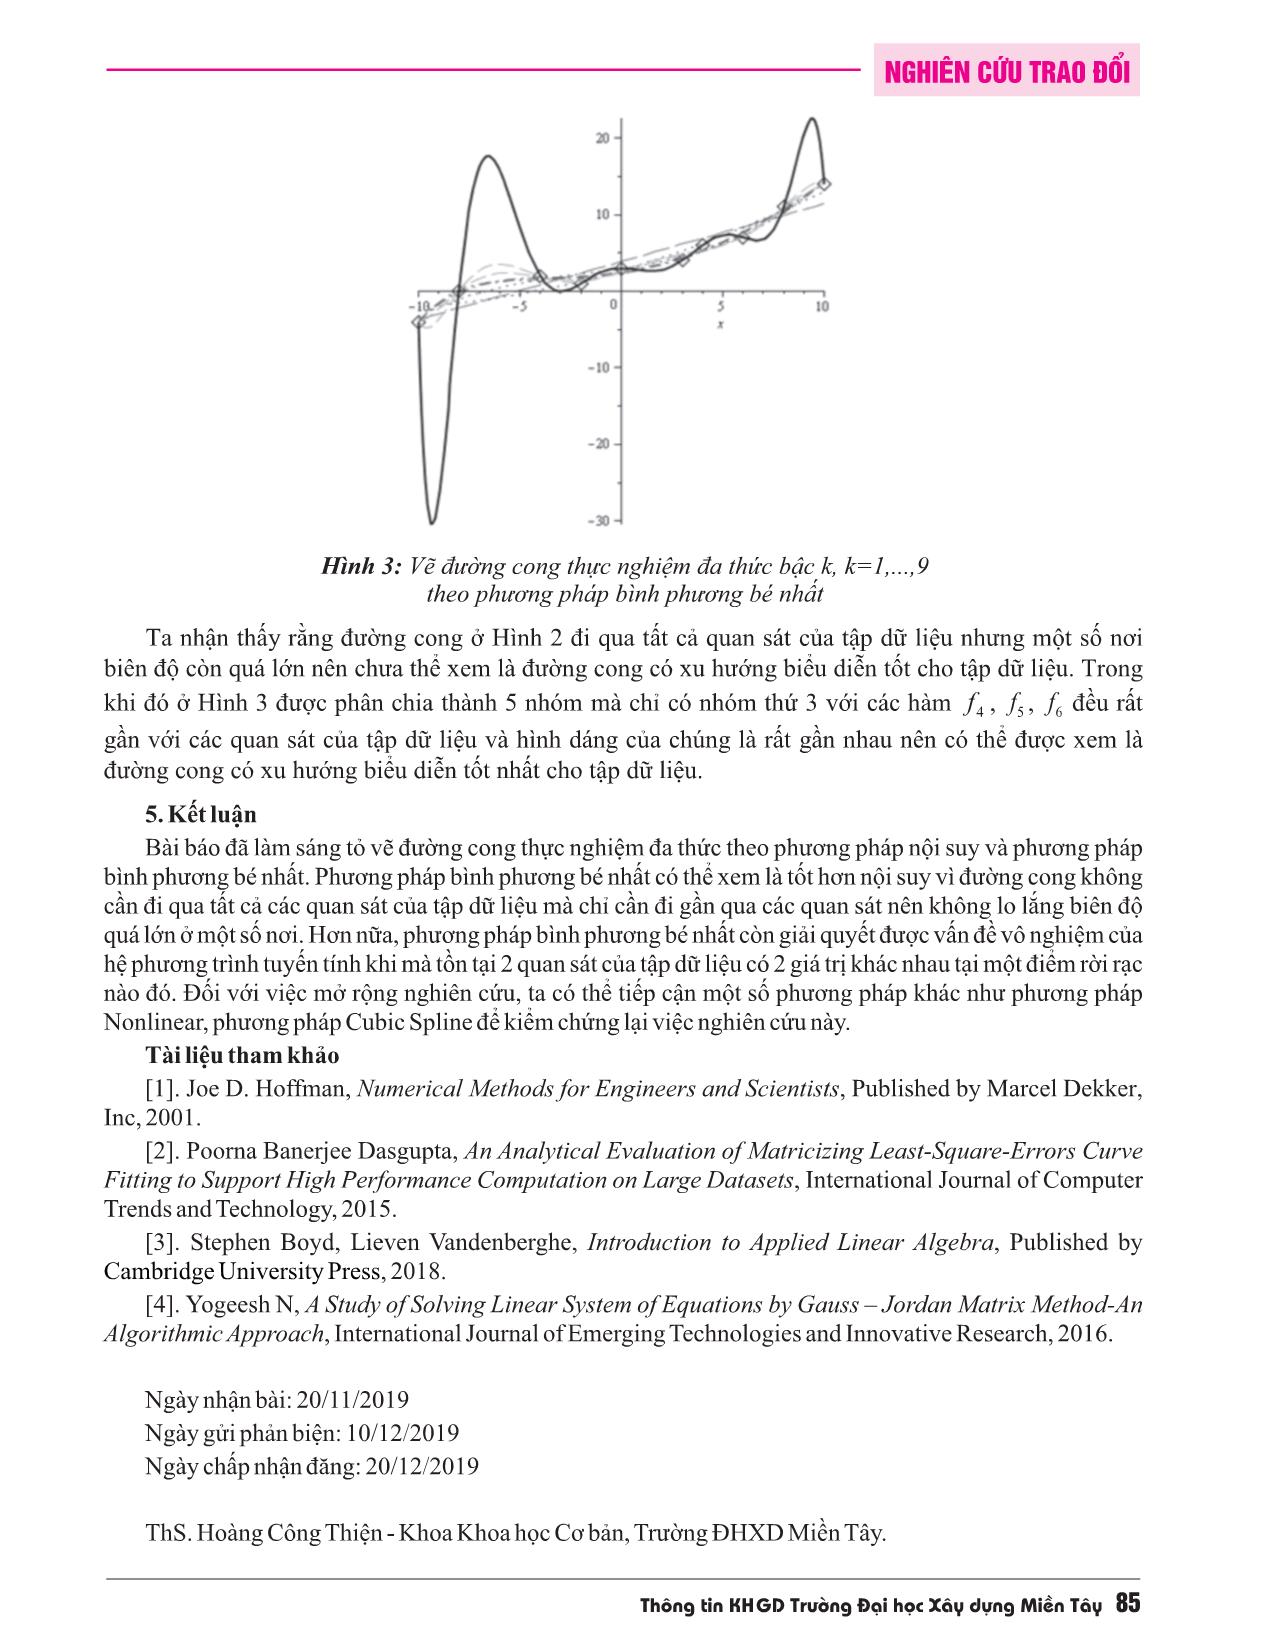 Khử Gauss-Jordan với vẽ đường cong thực nghiệm đa thức trang 8